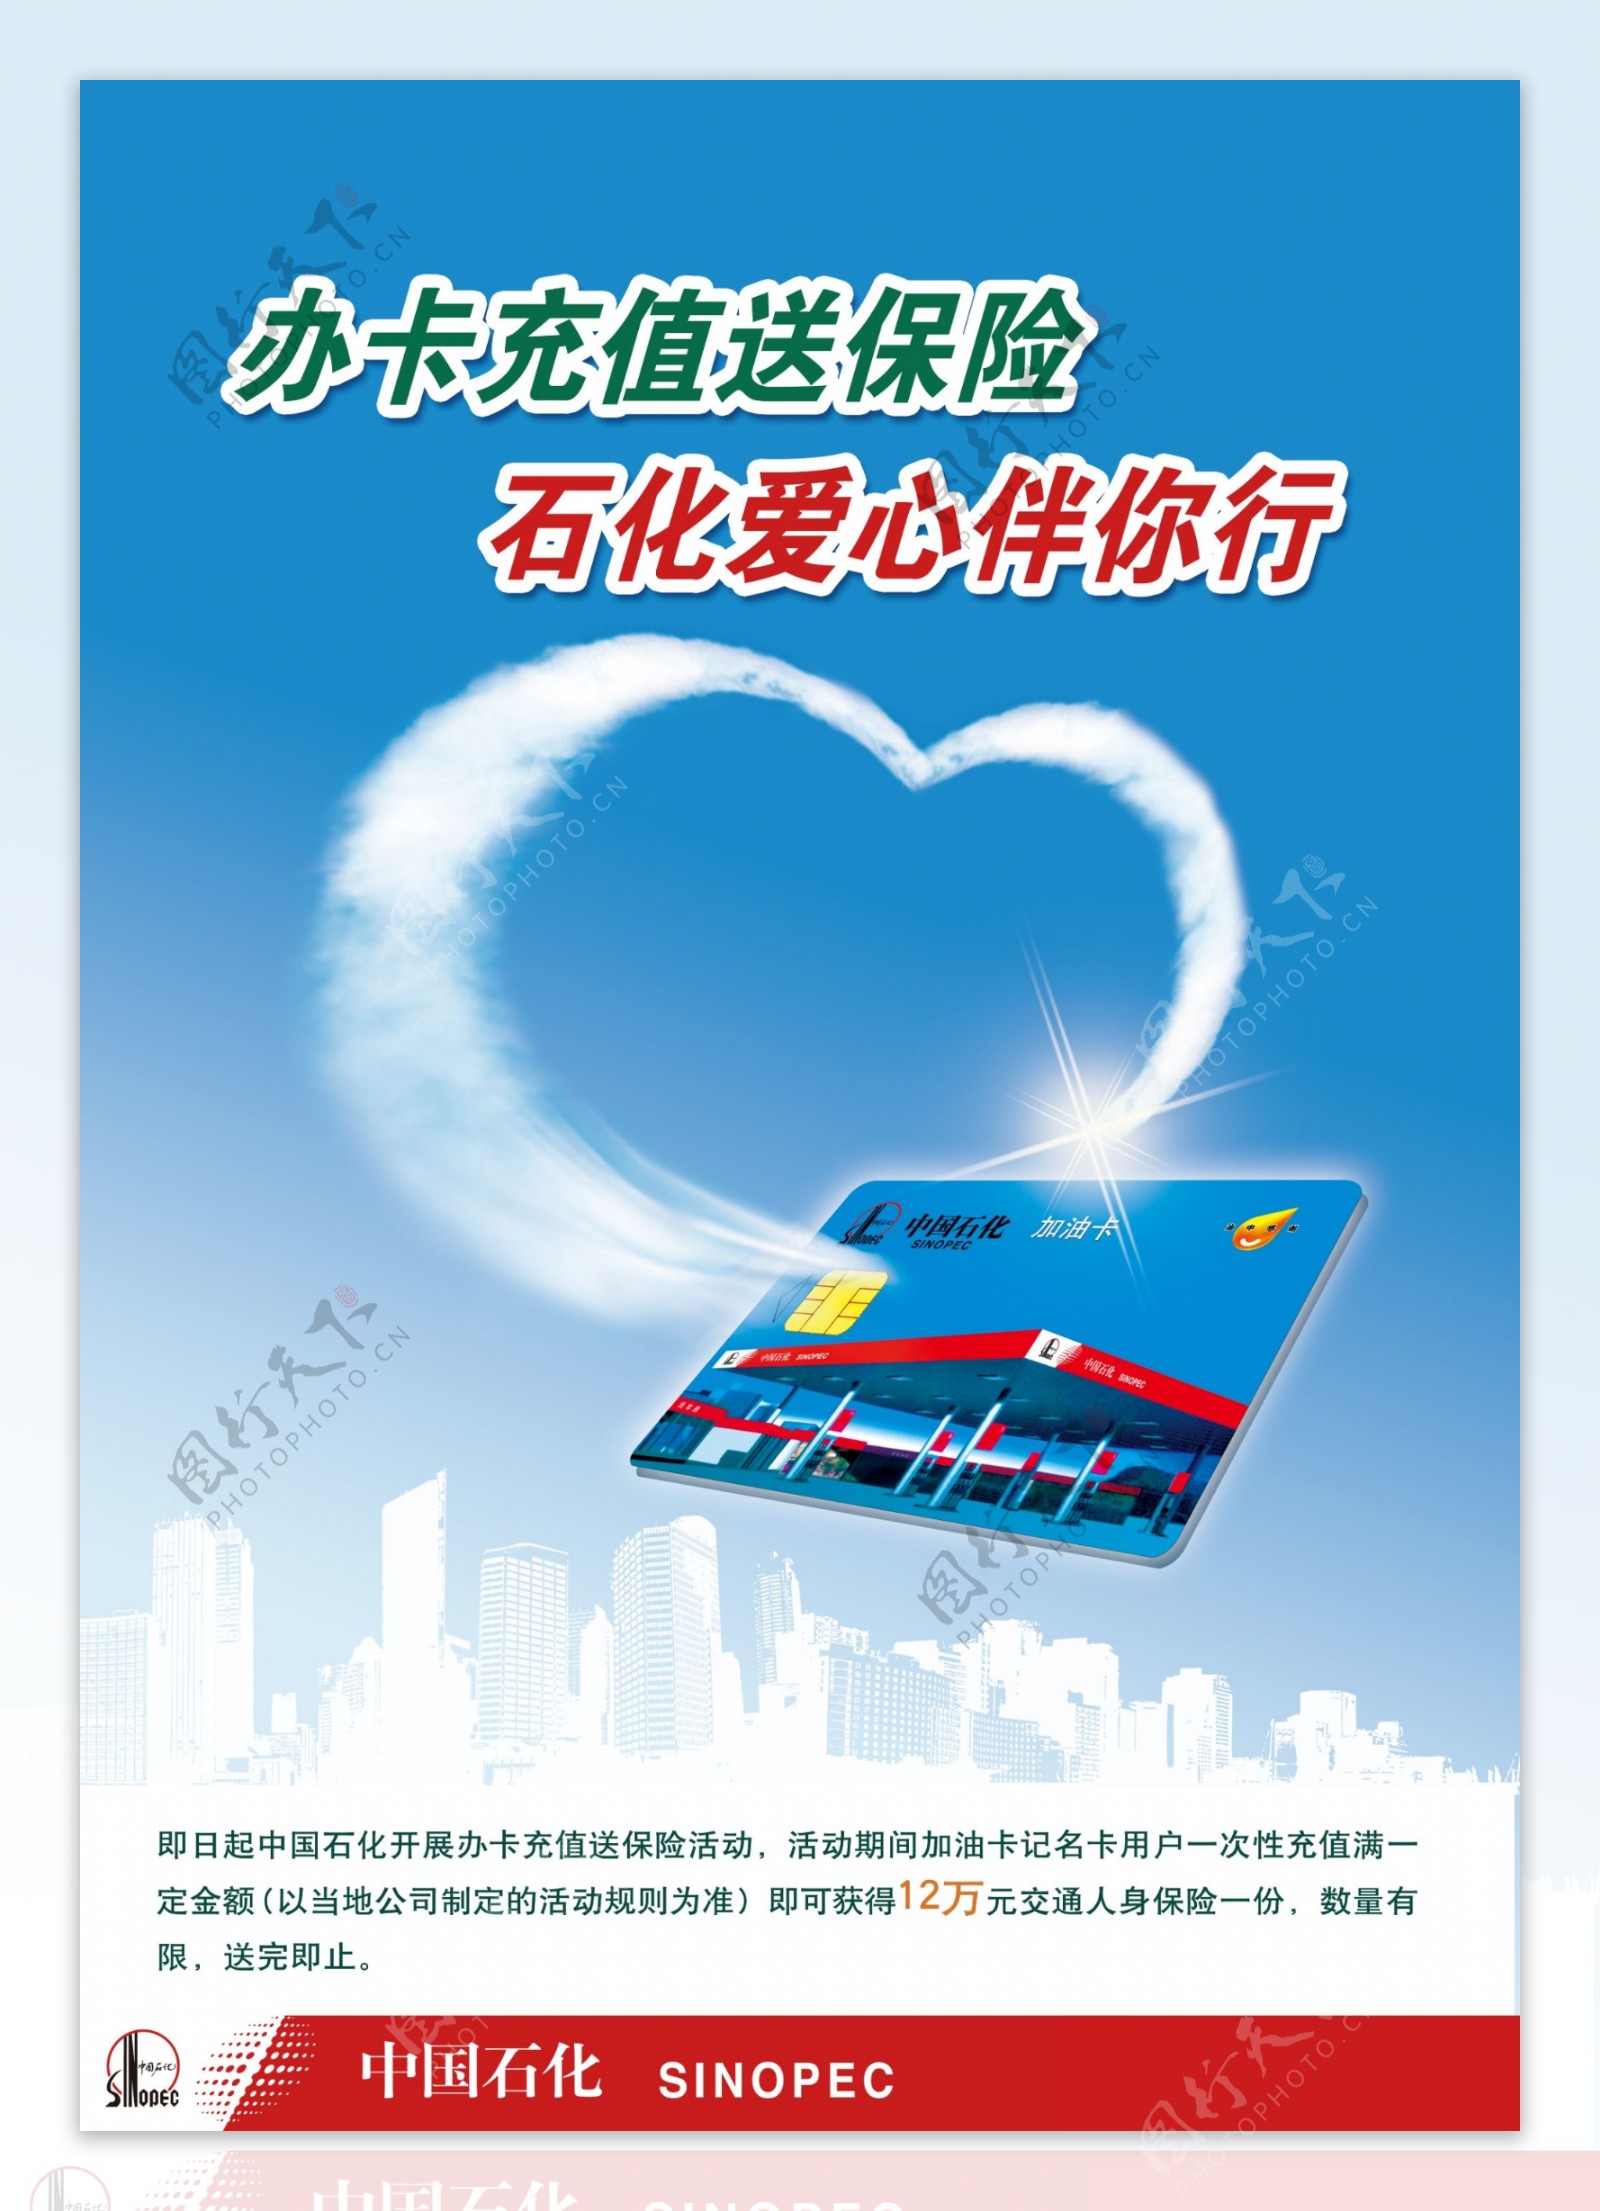 中国石化加油卡保险图片